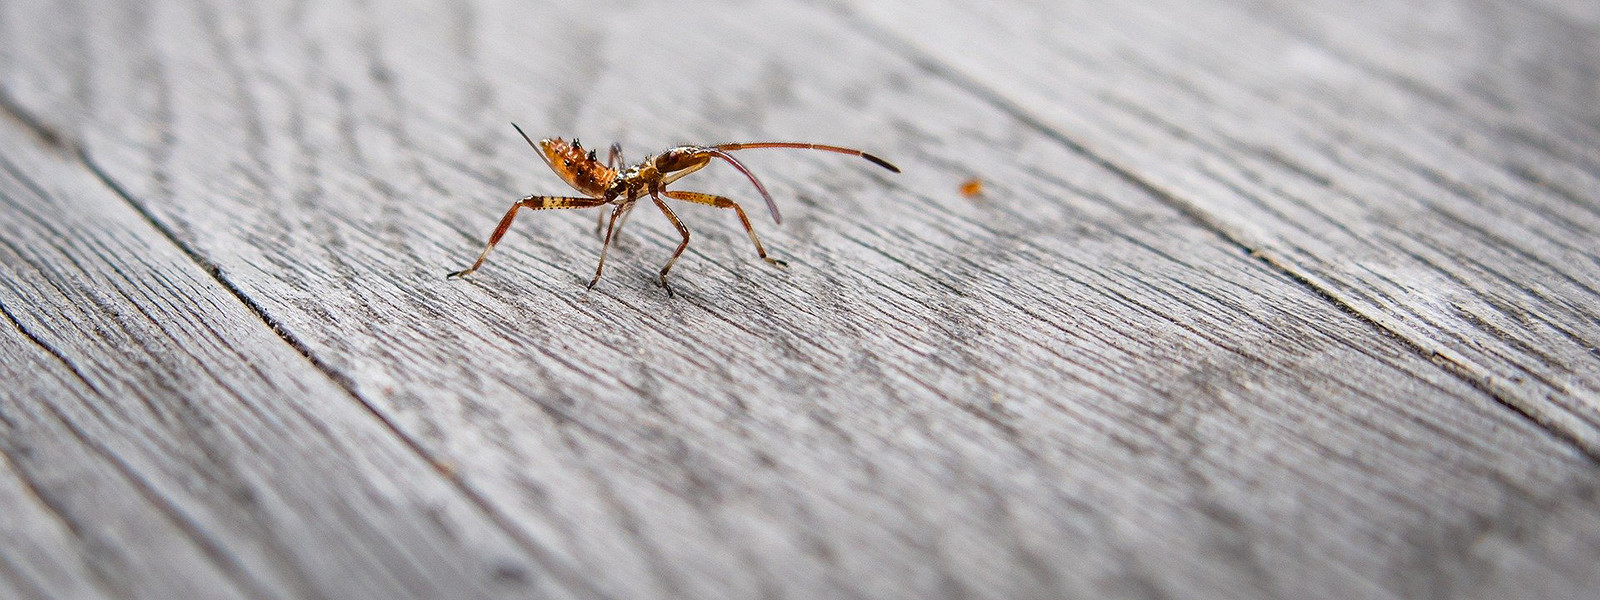 Тараканы — чем вредны, как лучше проводить уничтожение